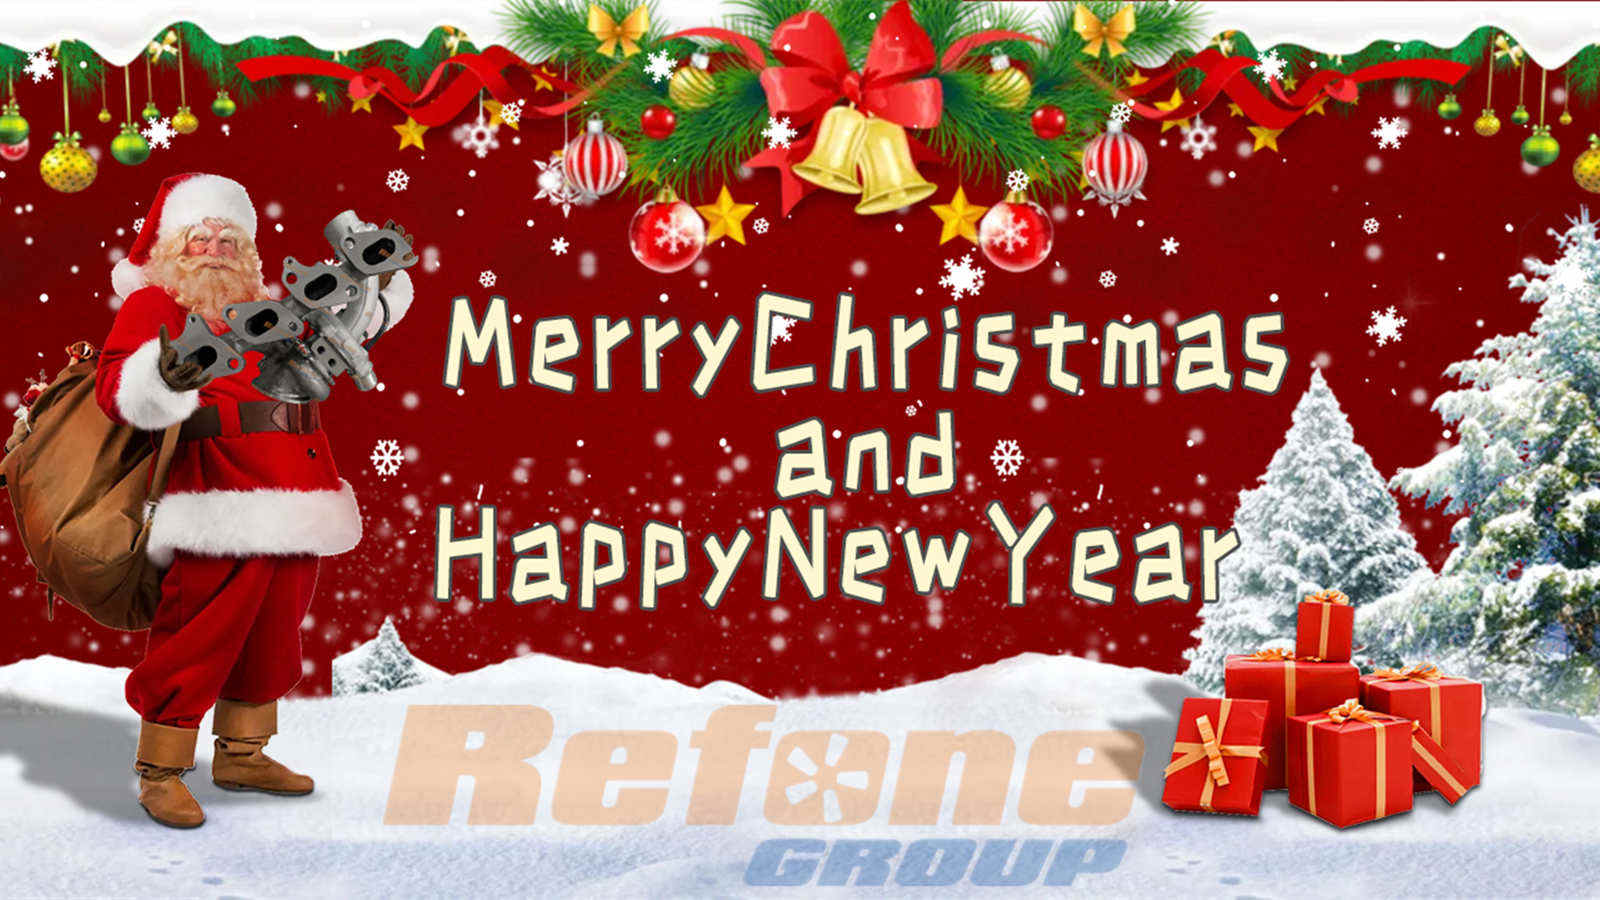 عيد الميلاديوم رأس السنة الجديدة قادم - Refone Turbo Group